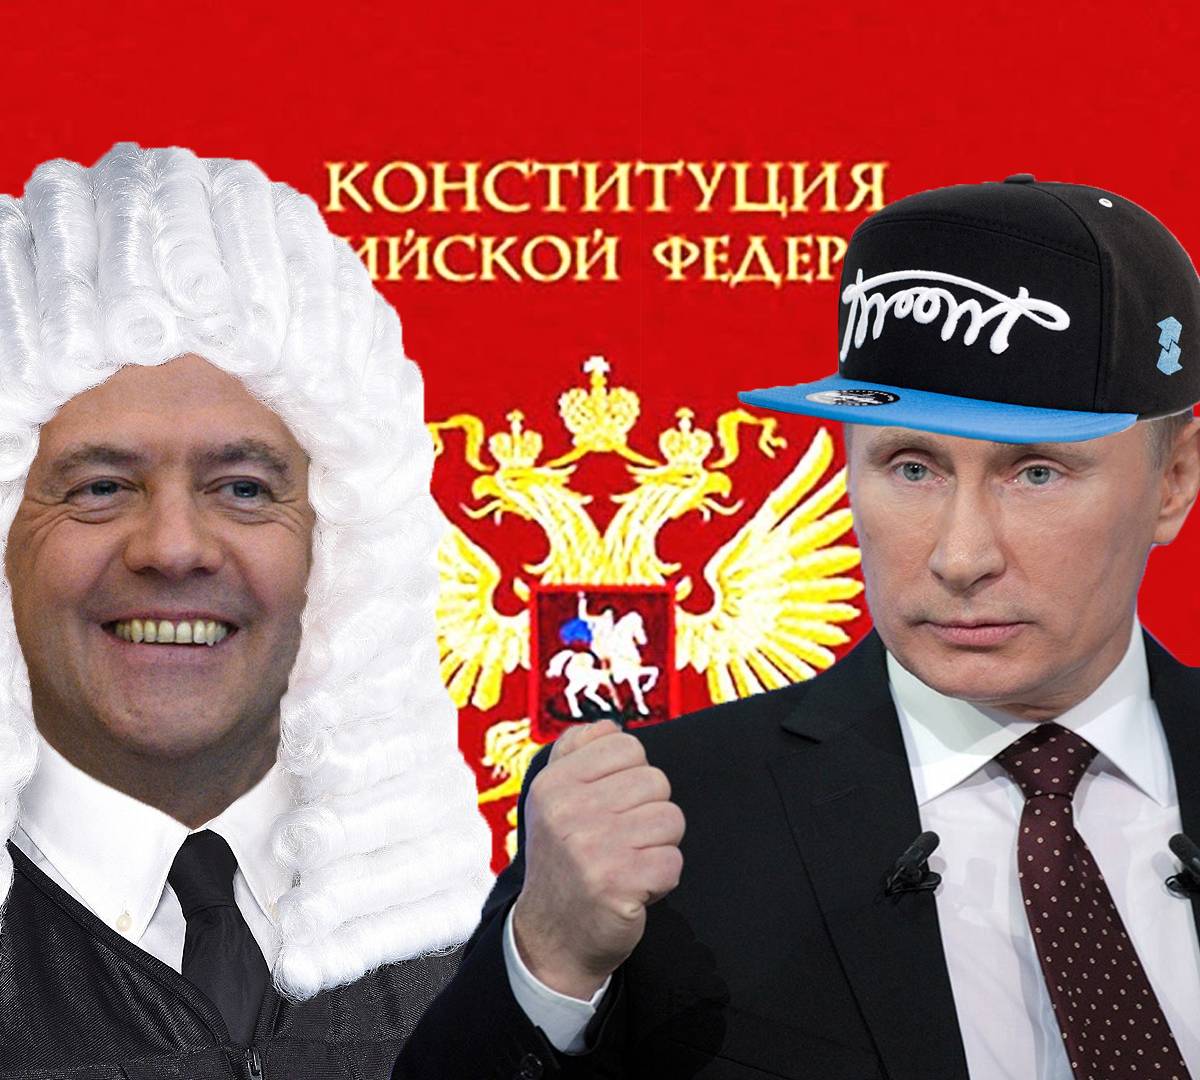 Танцы с Конституцией: Медведев примеряет судейскую мантию